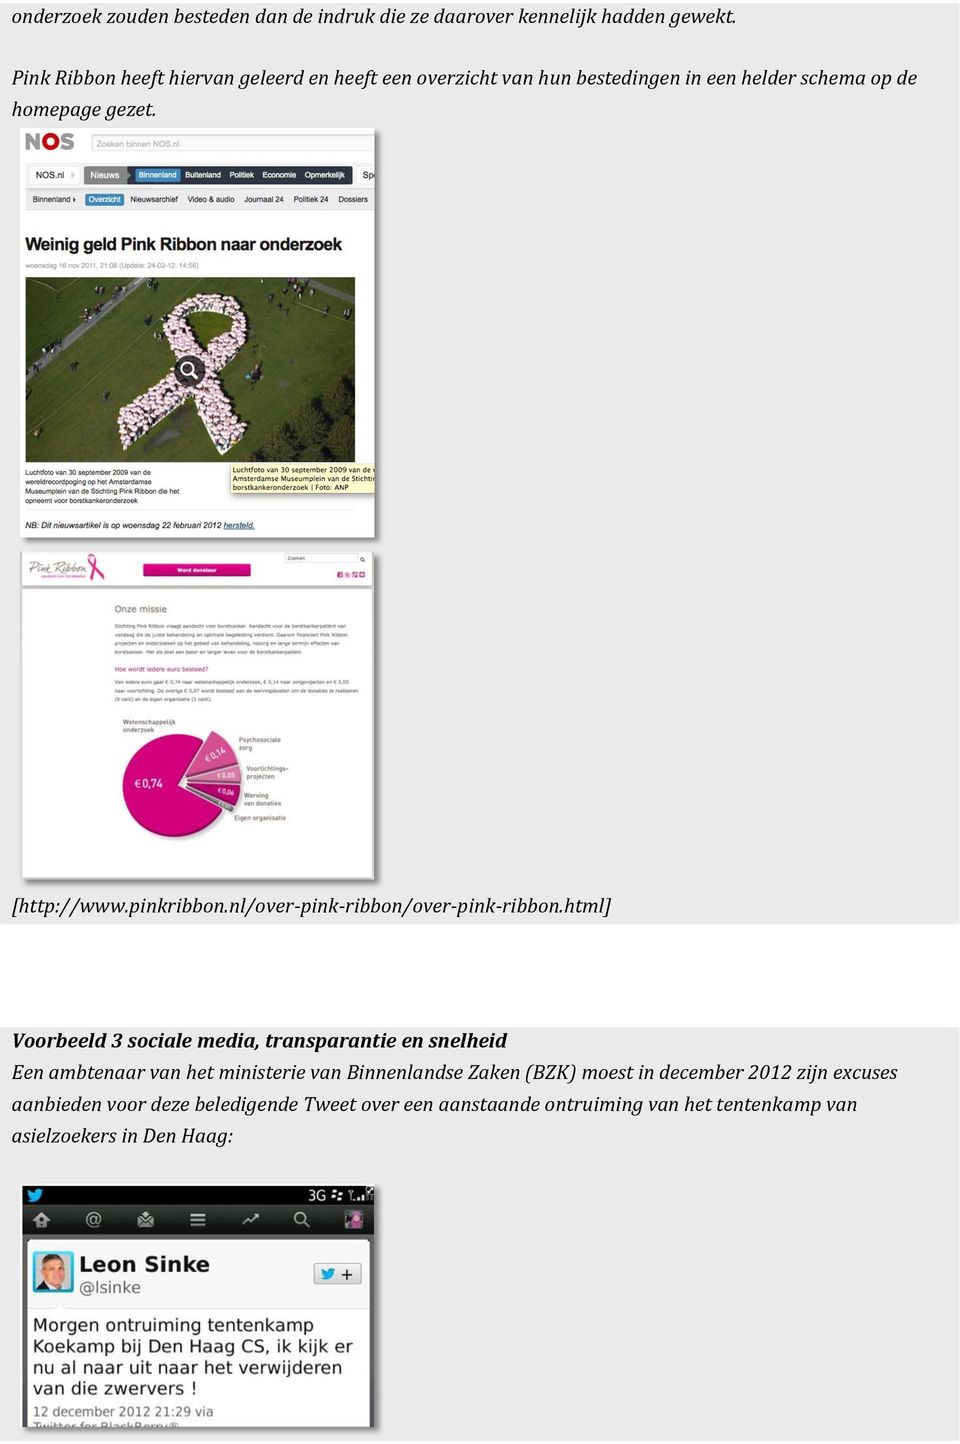 pinkribbon.nl/over-pink-ribbon/over-pink-ribbon.